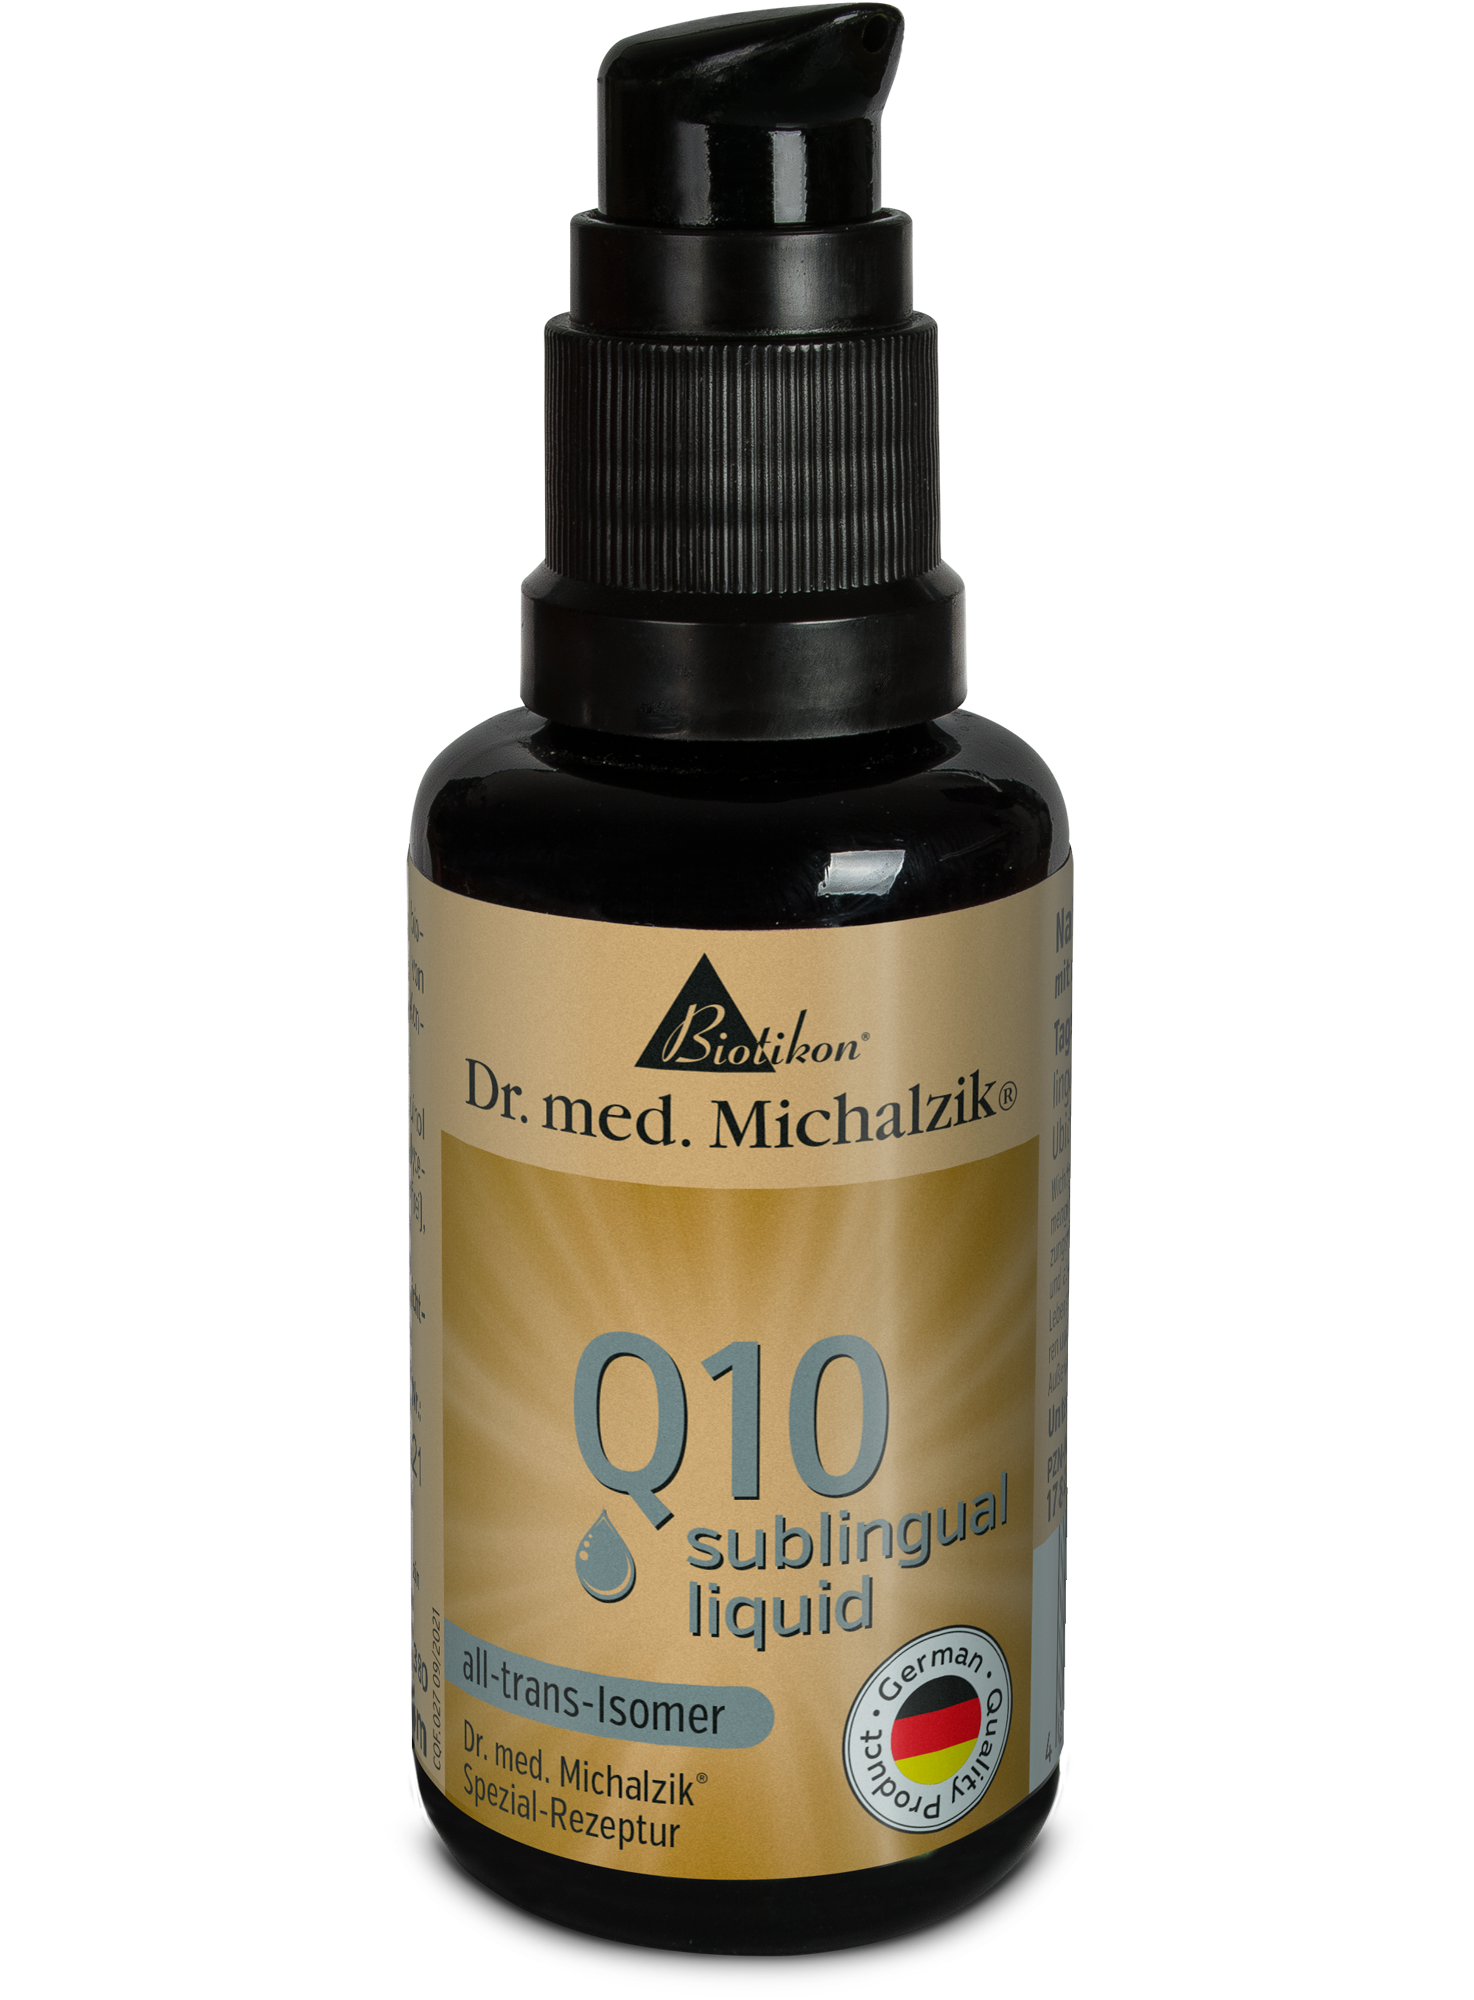 Q10 - sublingual liquid